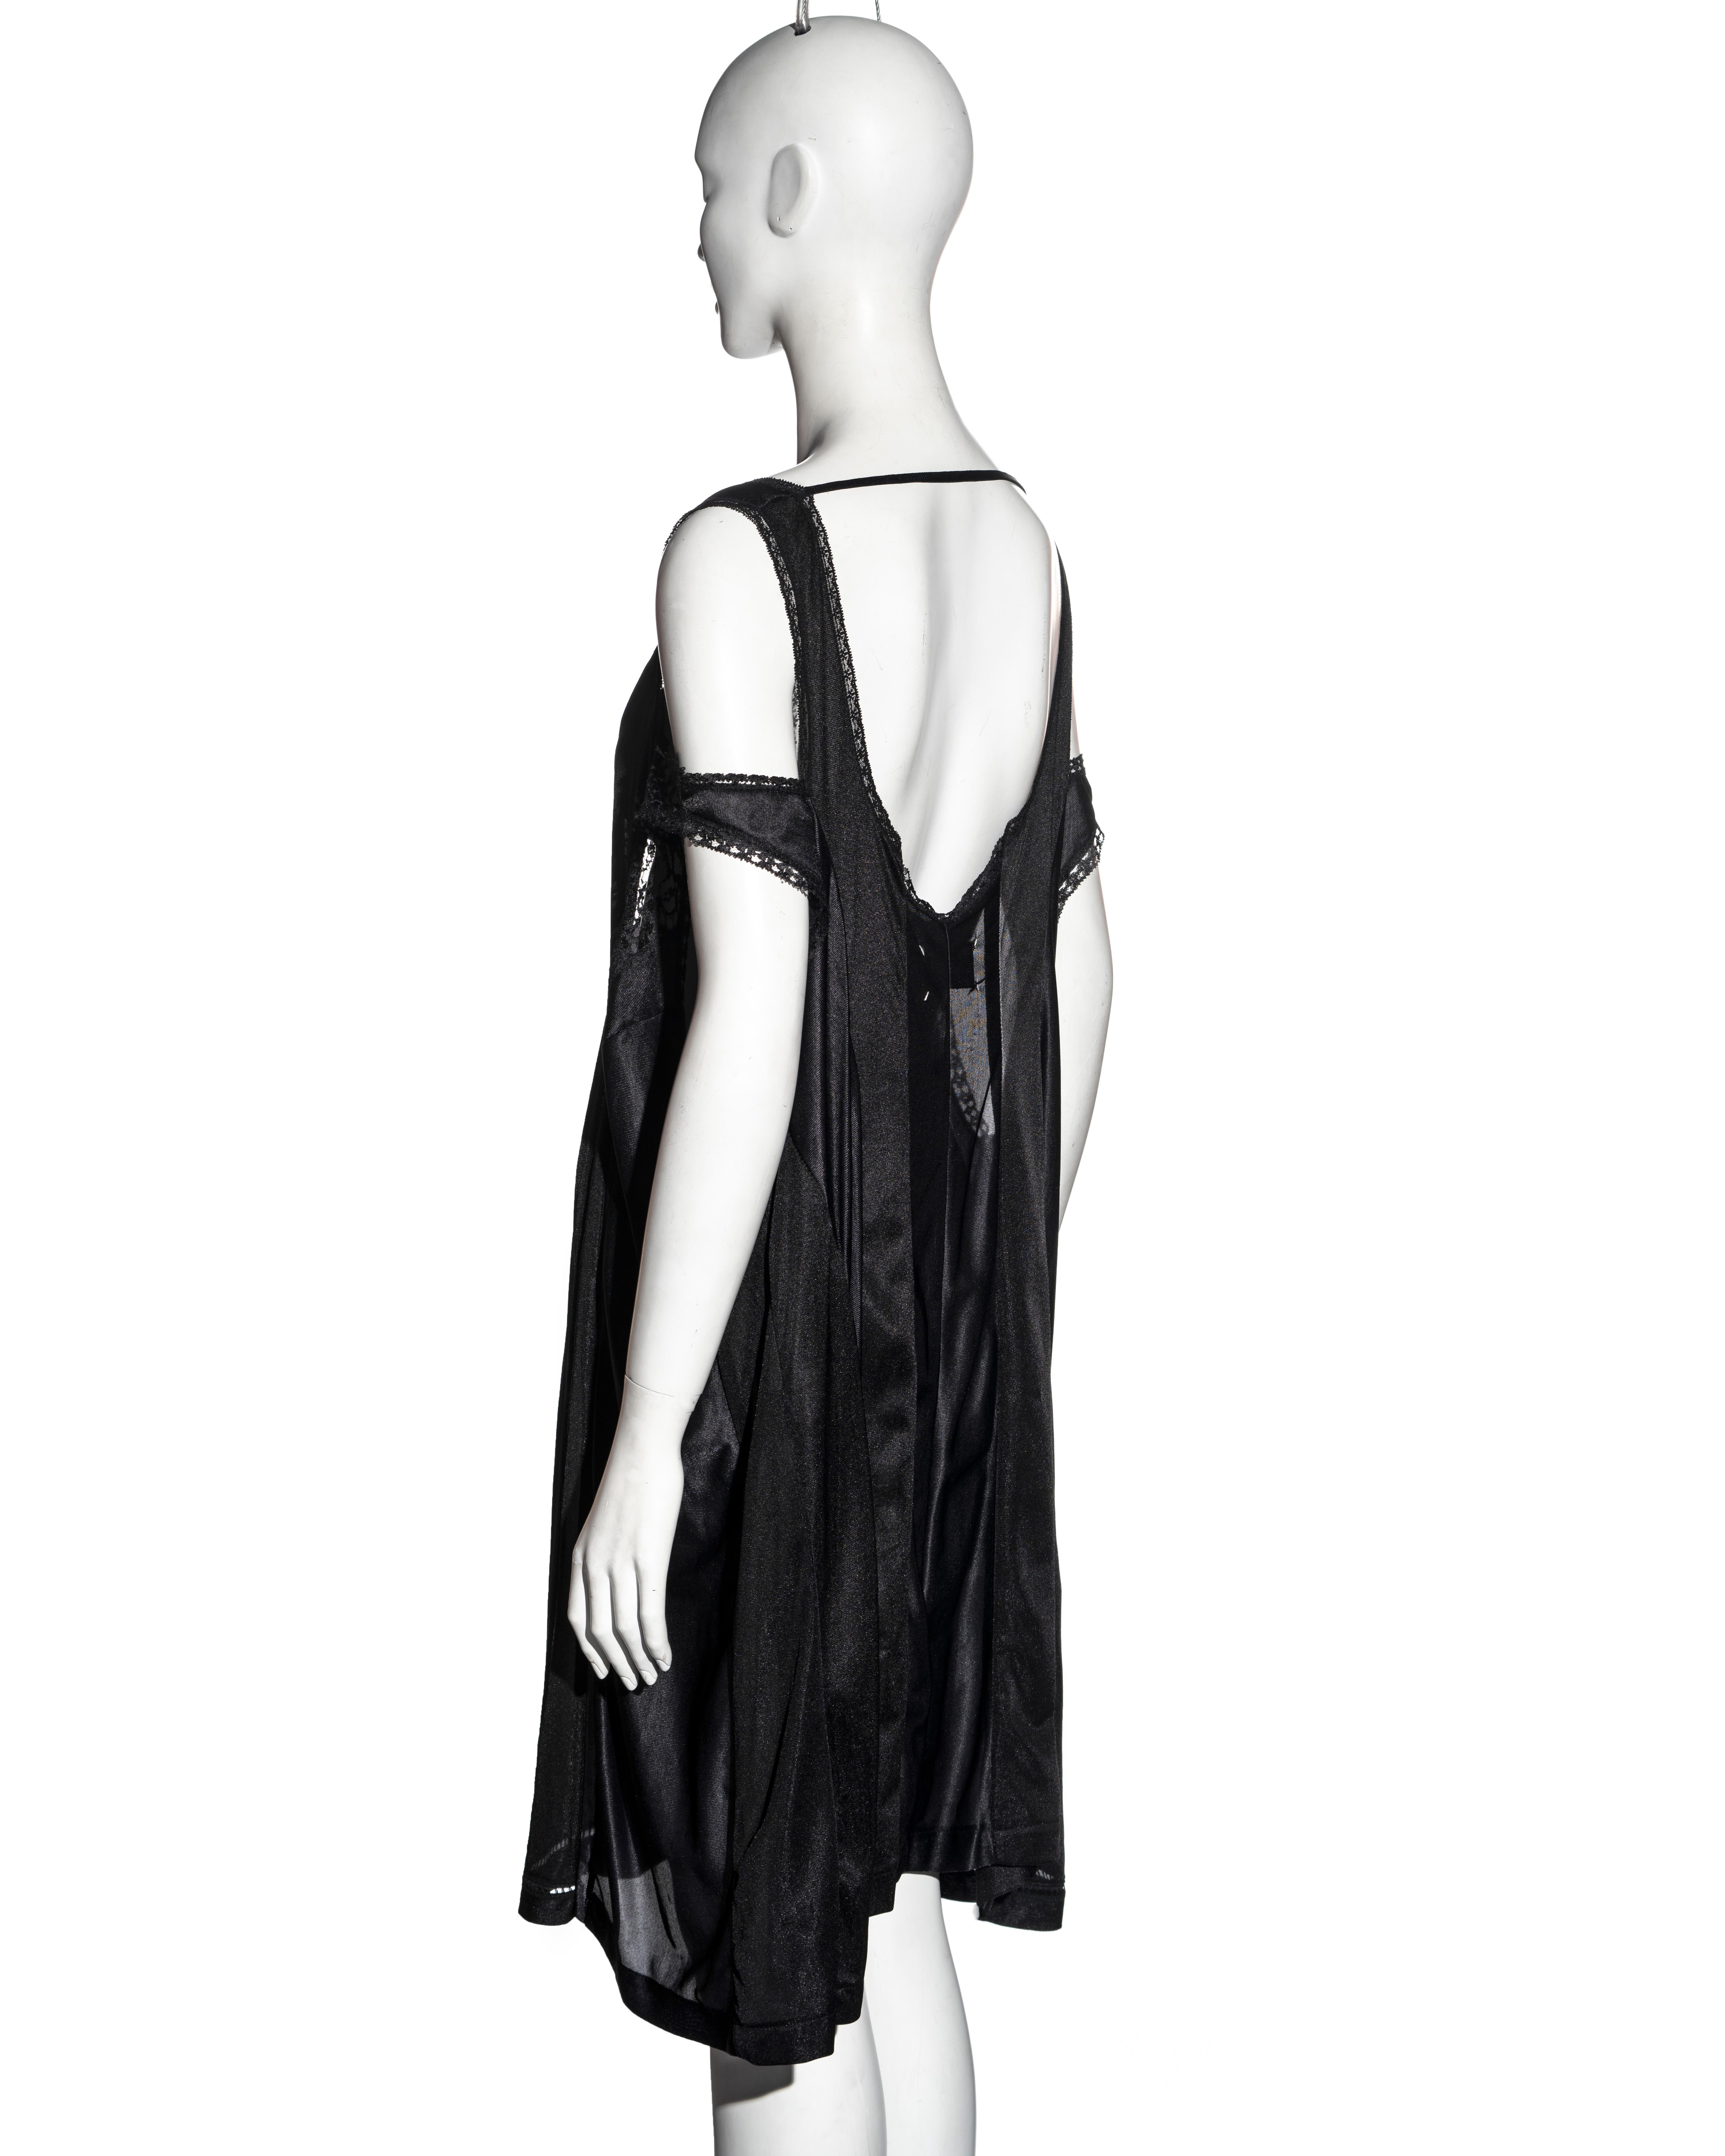 Martin Margiela black oversized artisanal slip dress, ss 2000 2